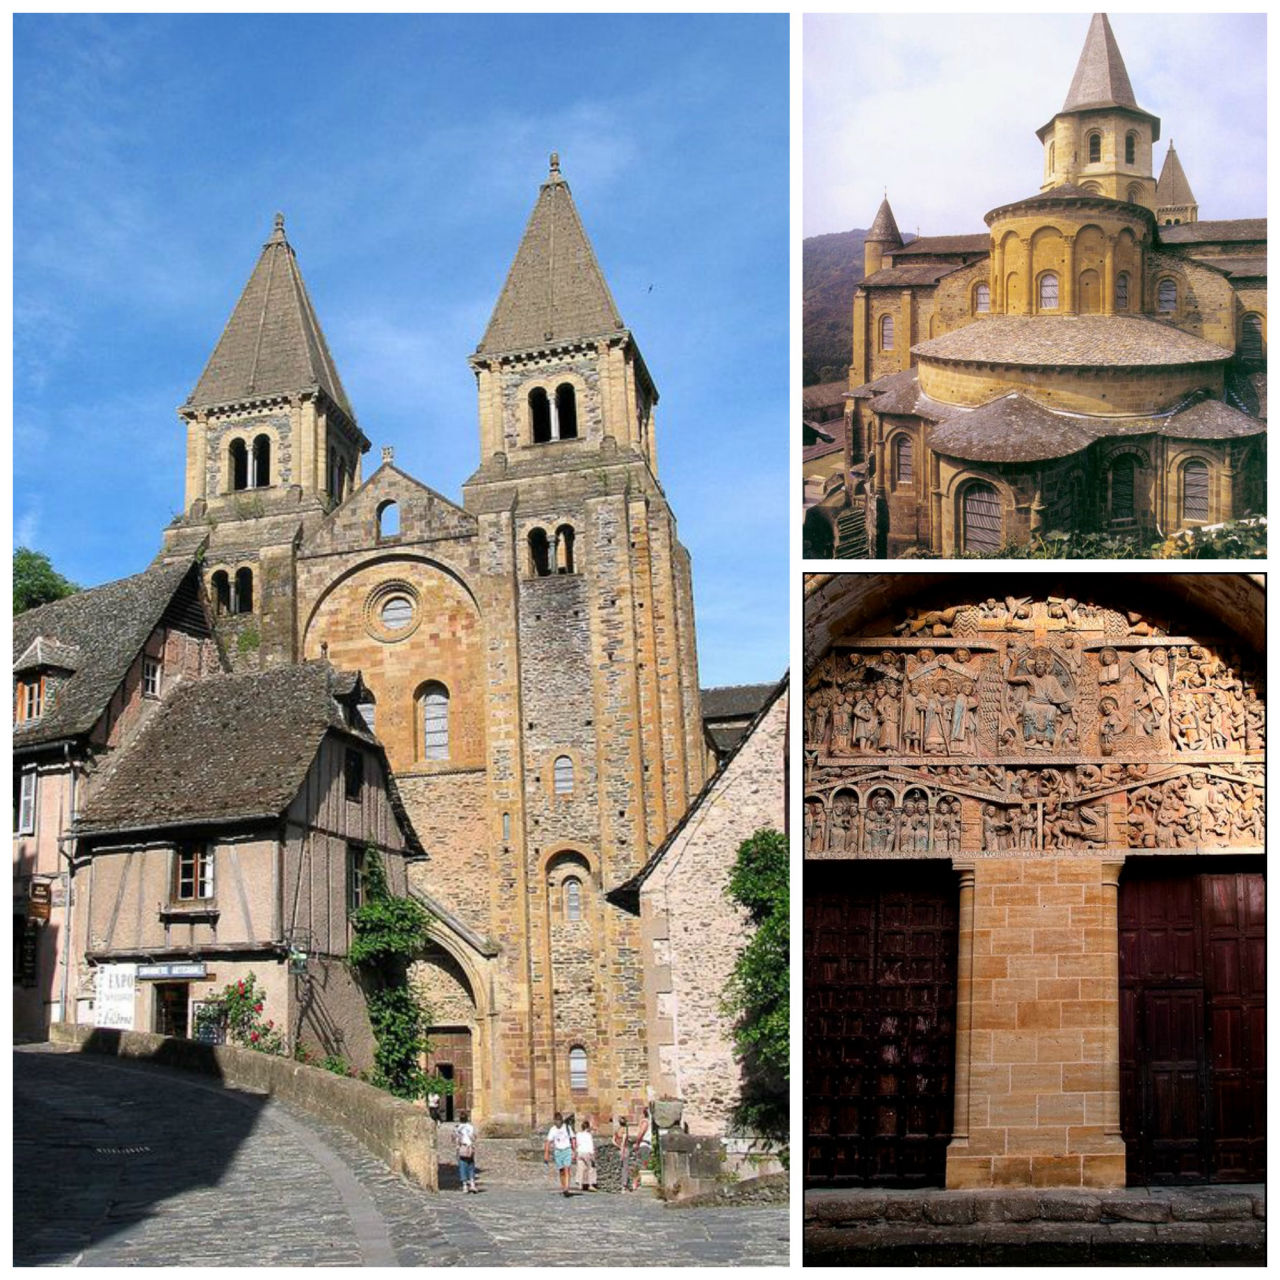 A Abadia de Saint-Foy, de estilo românico, era parada obrigatória dos peregrinos do caminho de Santiago de Compostela. Fotos: Pinterest/Reprodução